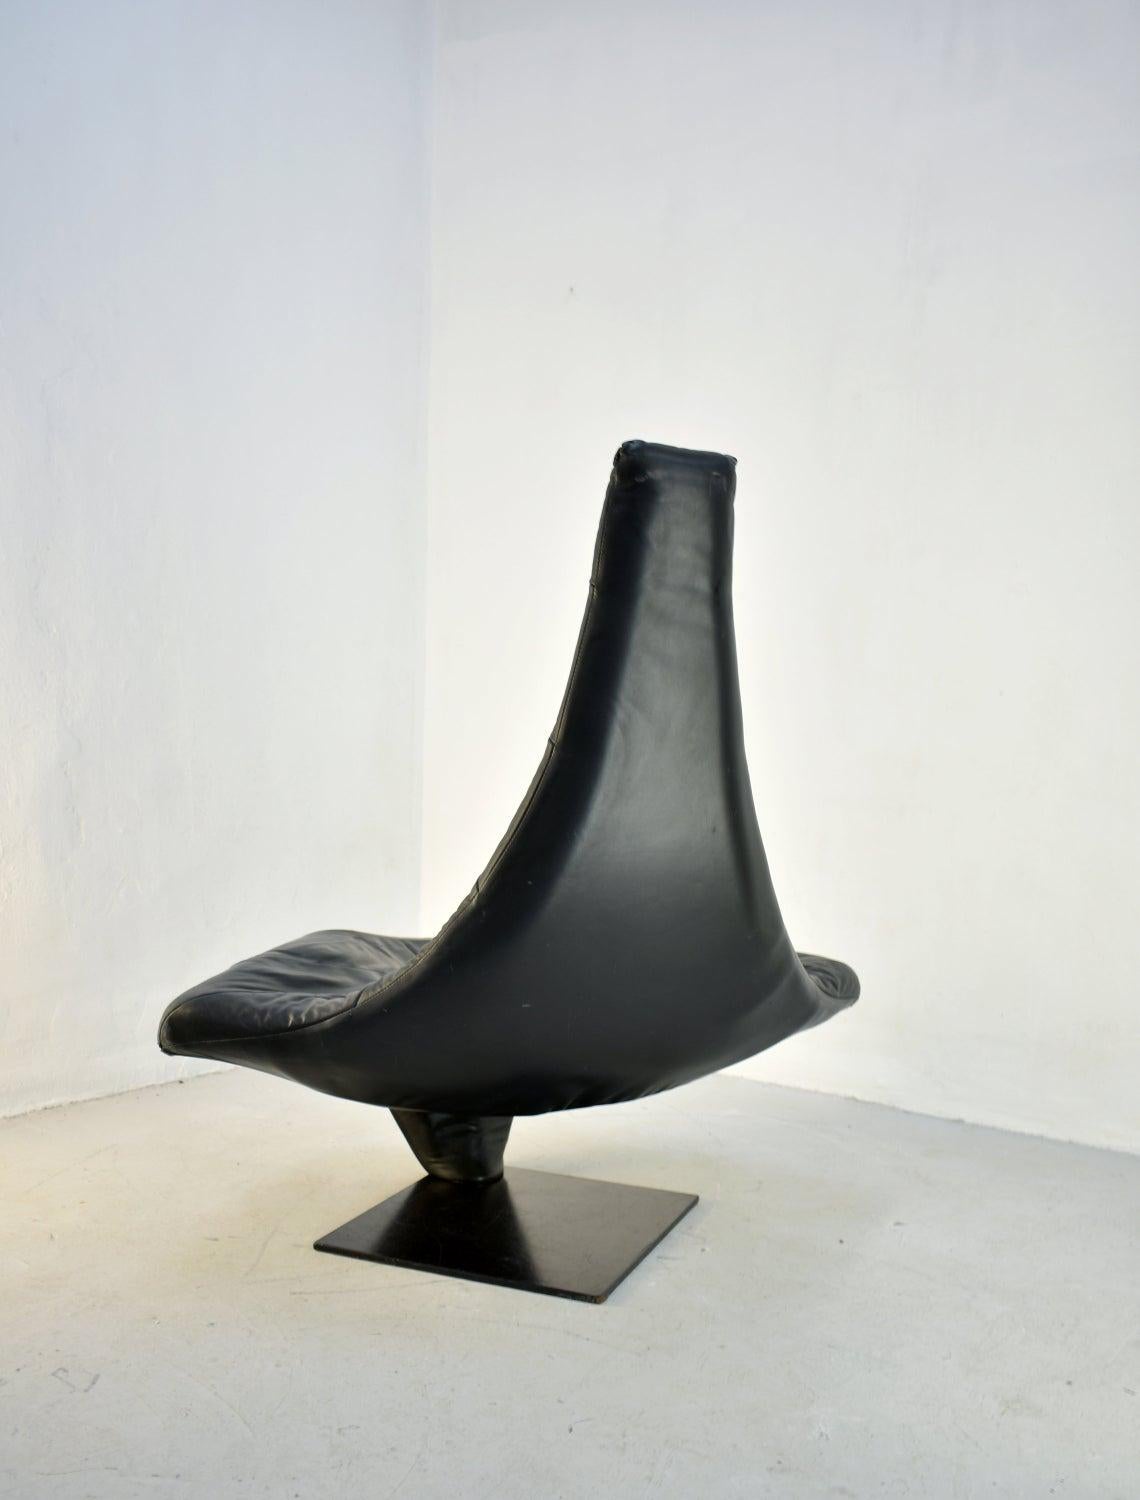 Dutch Lounge Chair in Black Leather, Model 'Turner' by Jack Crebolder for Harvink